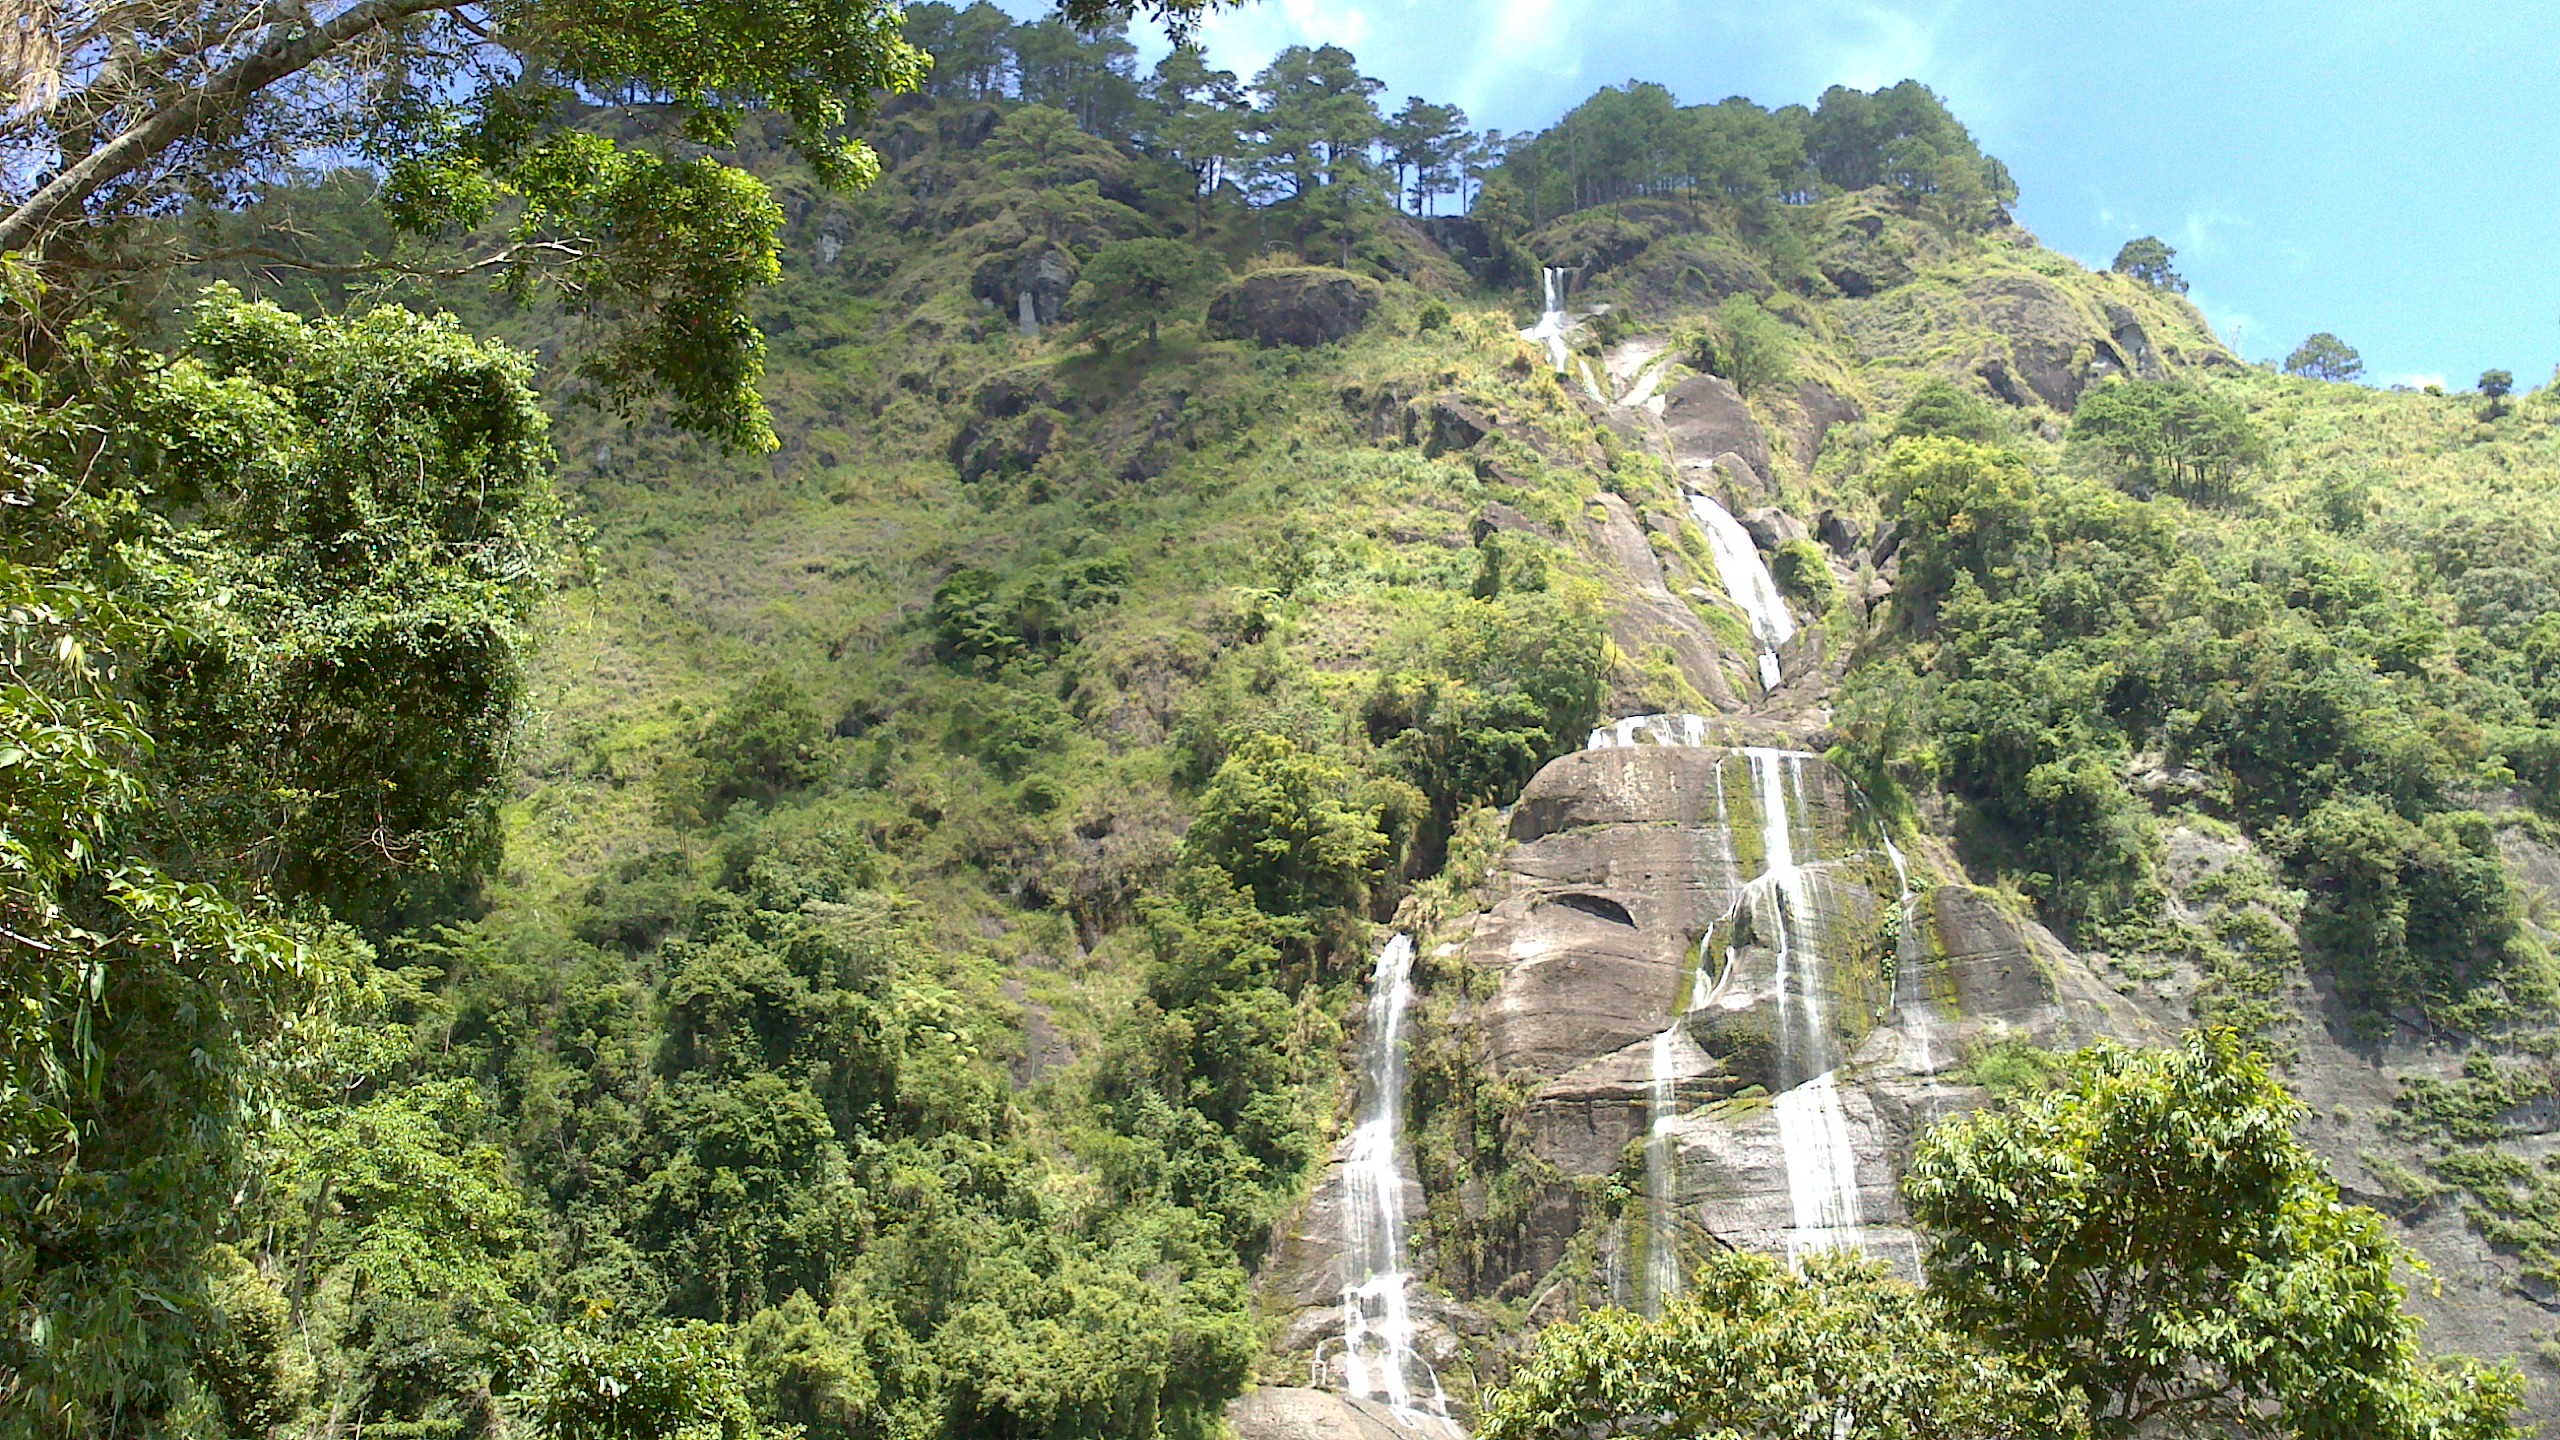 Tapaya, Pul-agan, Cotinge, Ginawang And Dageyadey Falls